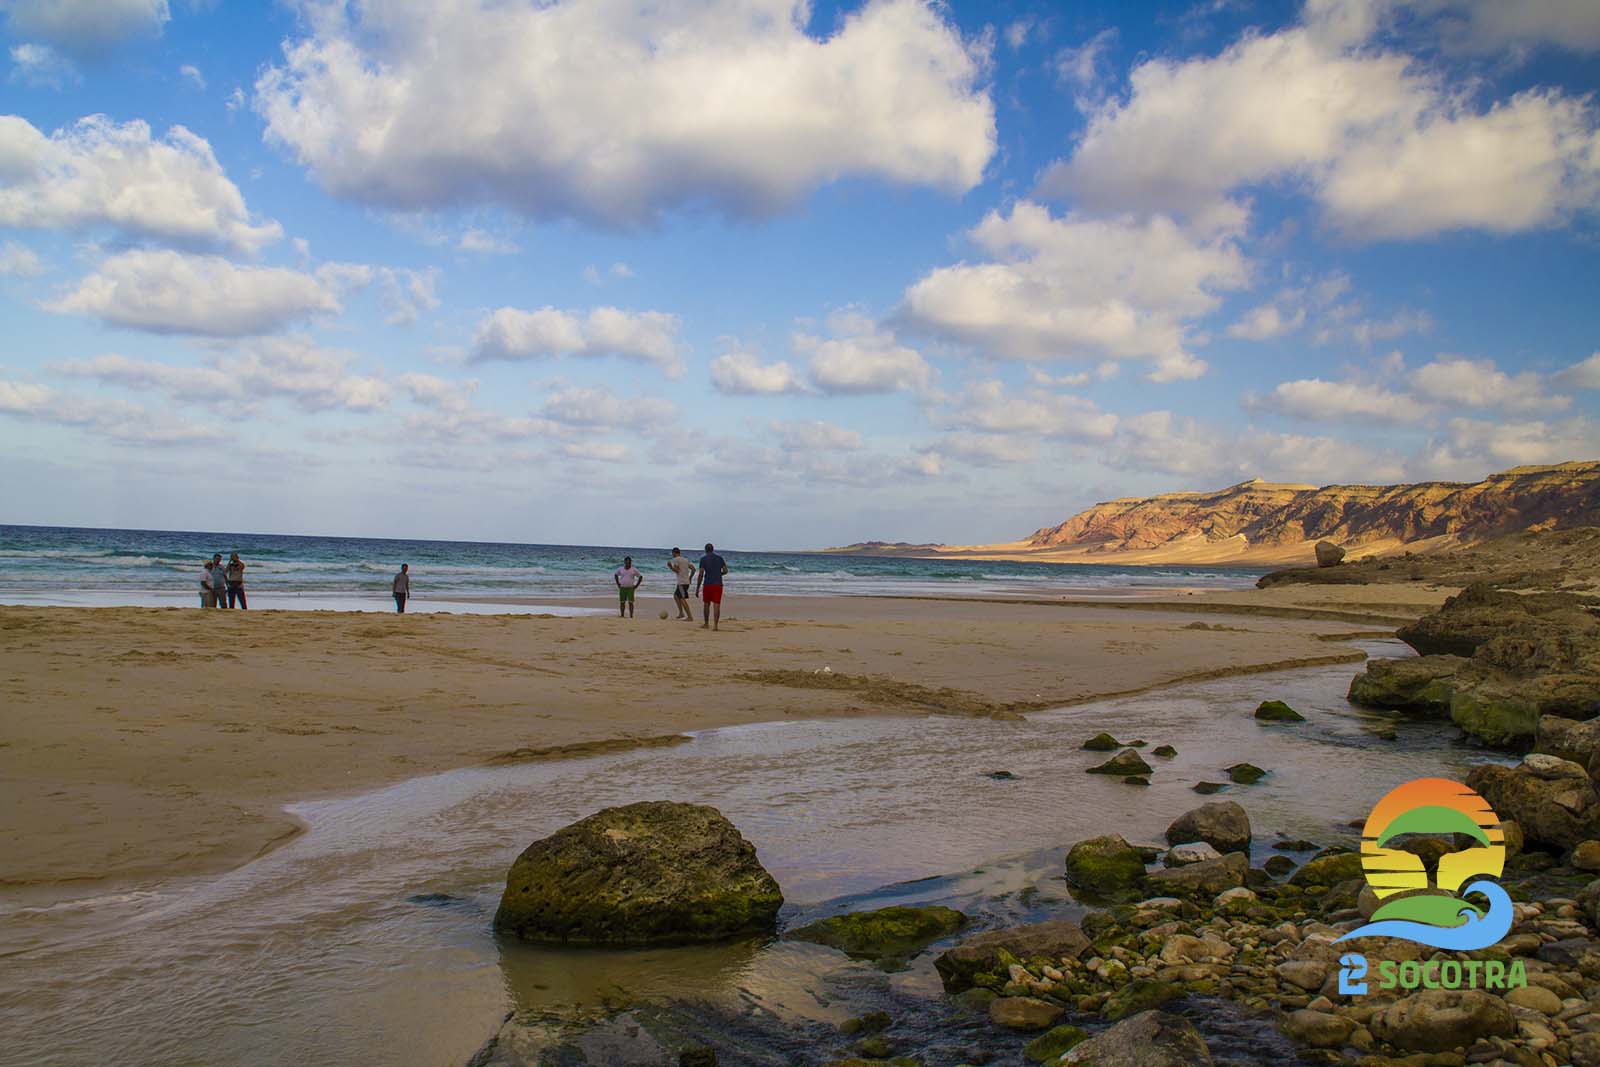 Arher beach, Socotra Island